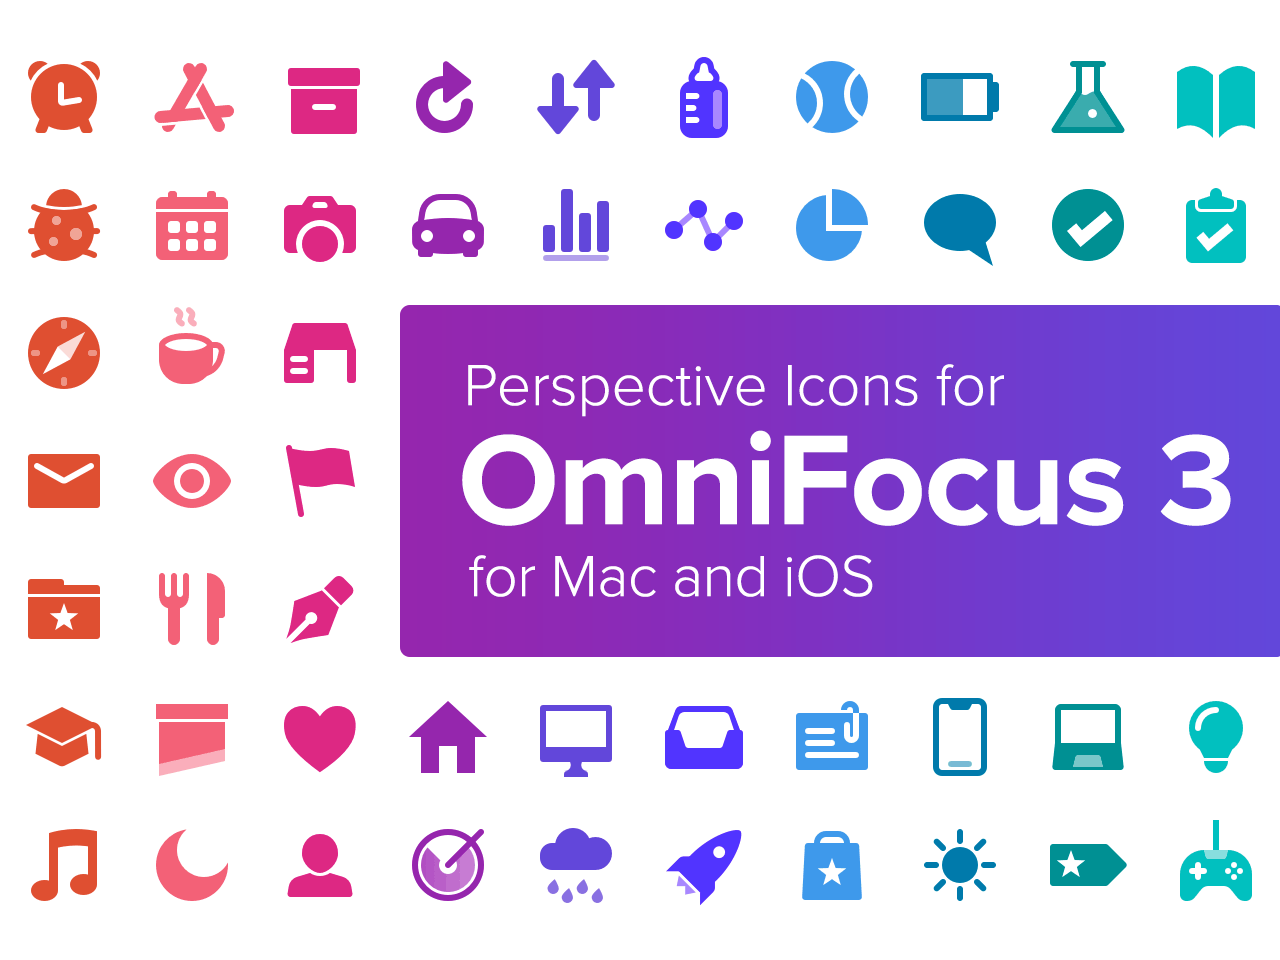 omnifocus pro mac